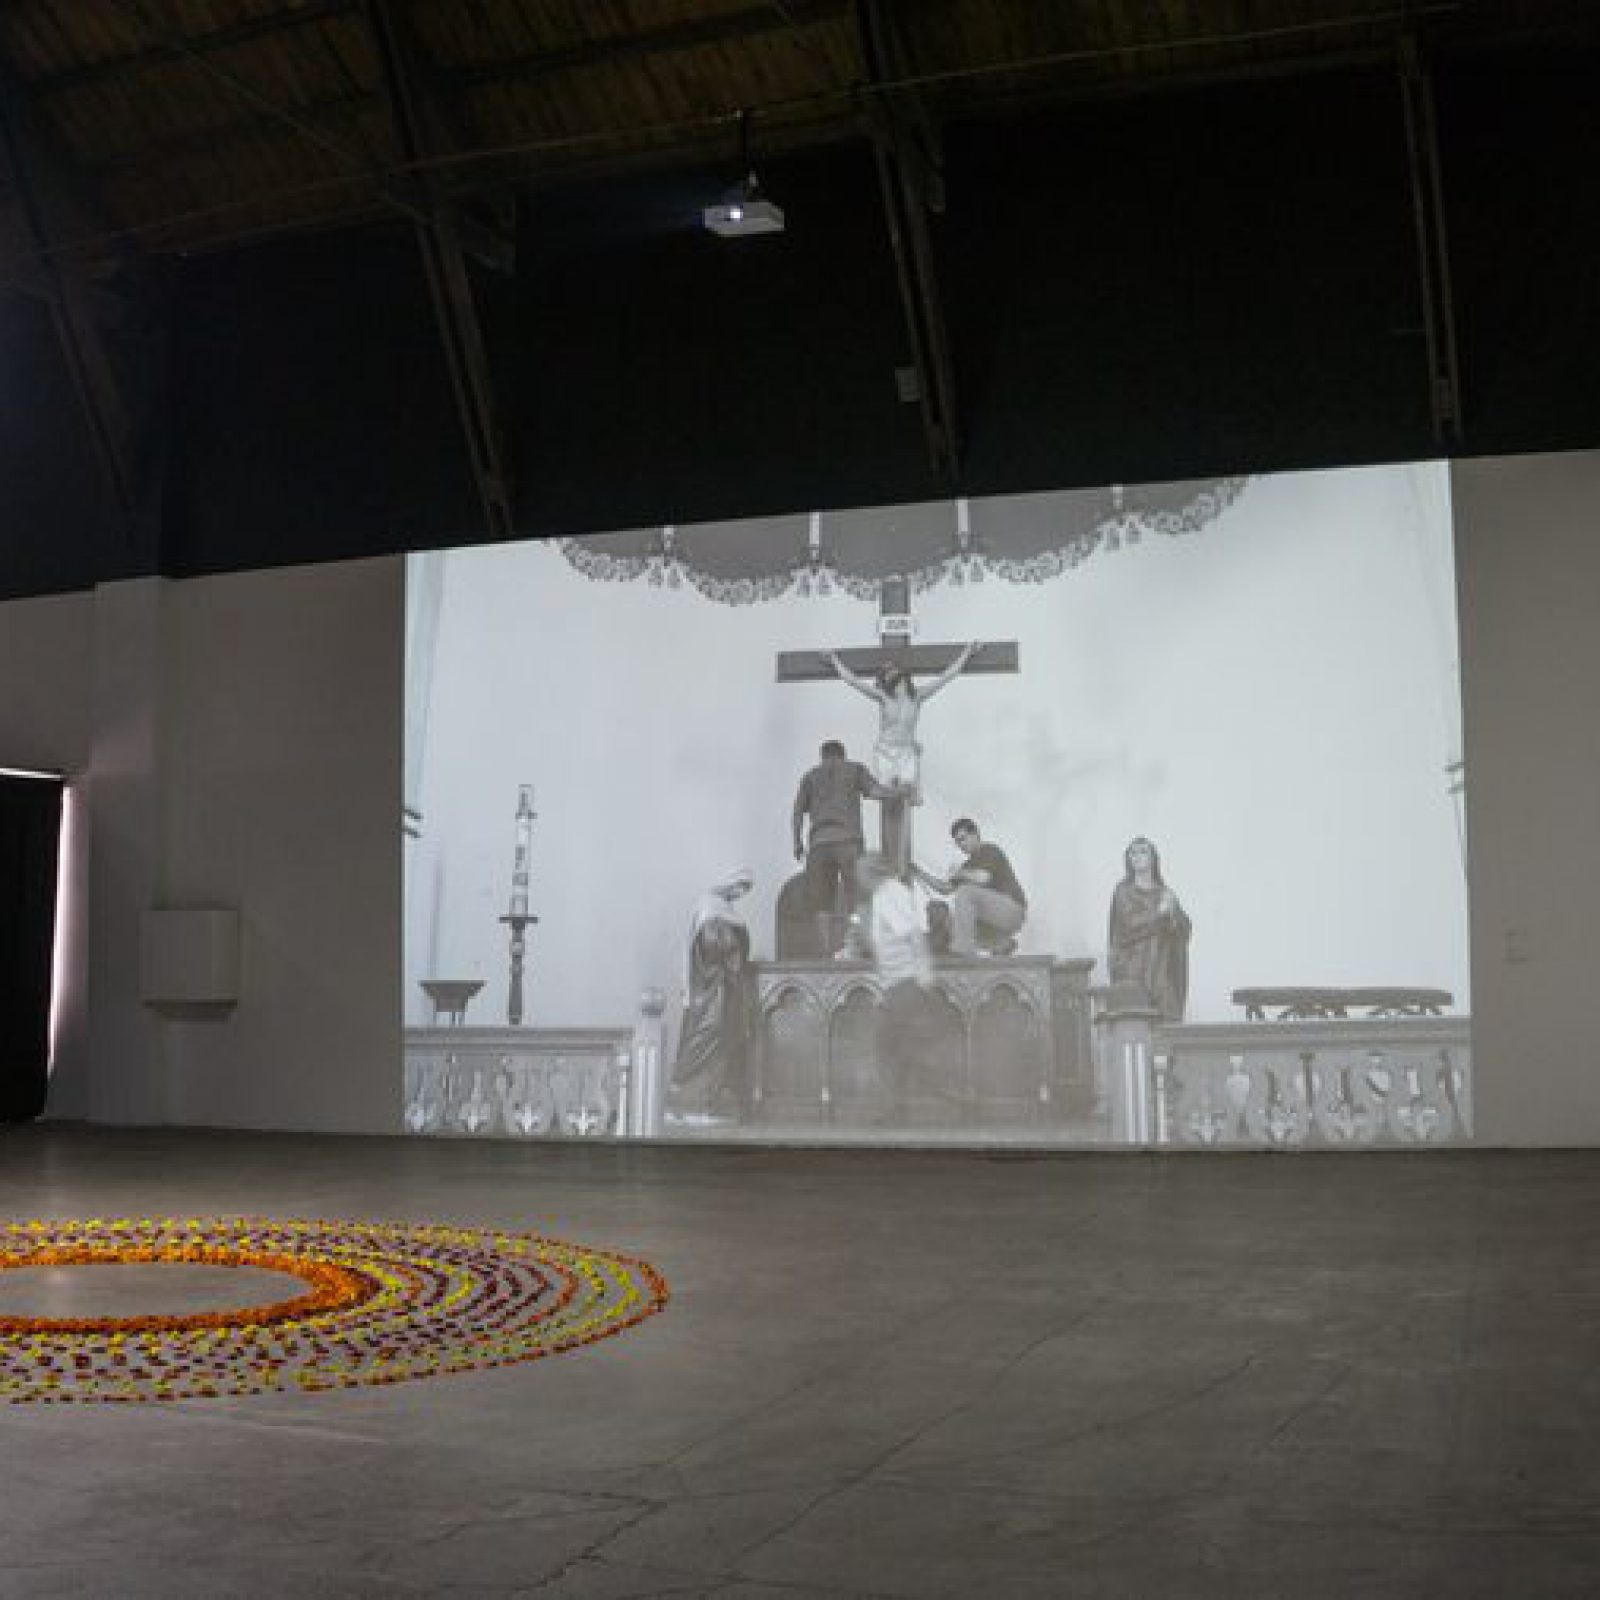 Vista de la exposición "Un kilómetro de conocimientos invisibles", de Ingrid Wildi Merino, en la Galería de Artes Visuales de Matucana 100, Santiago de Chile, 2019. Foto: M100